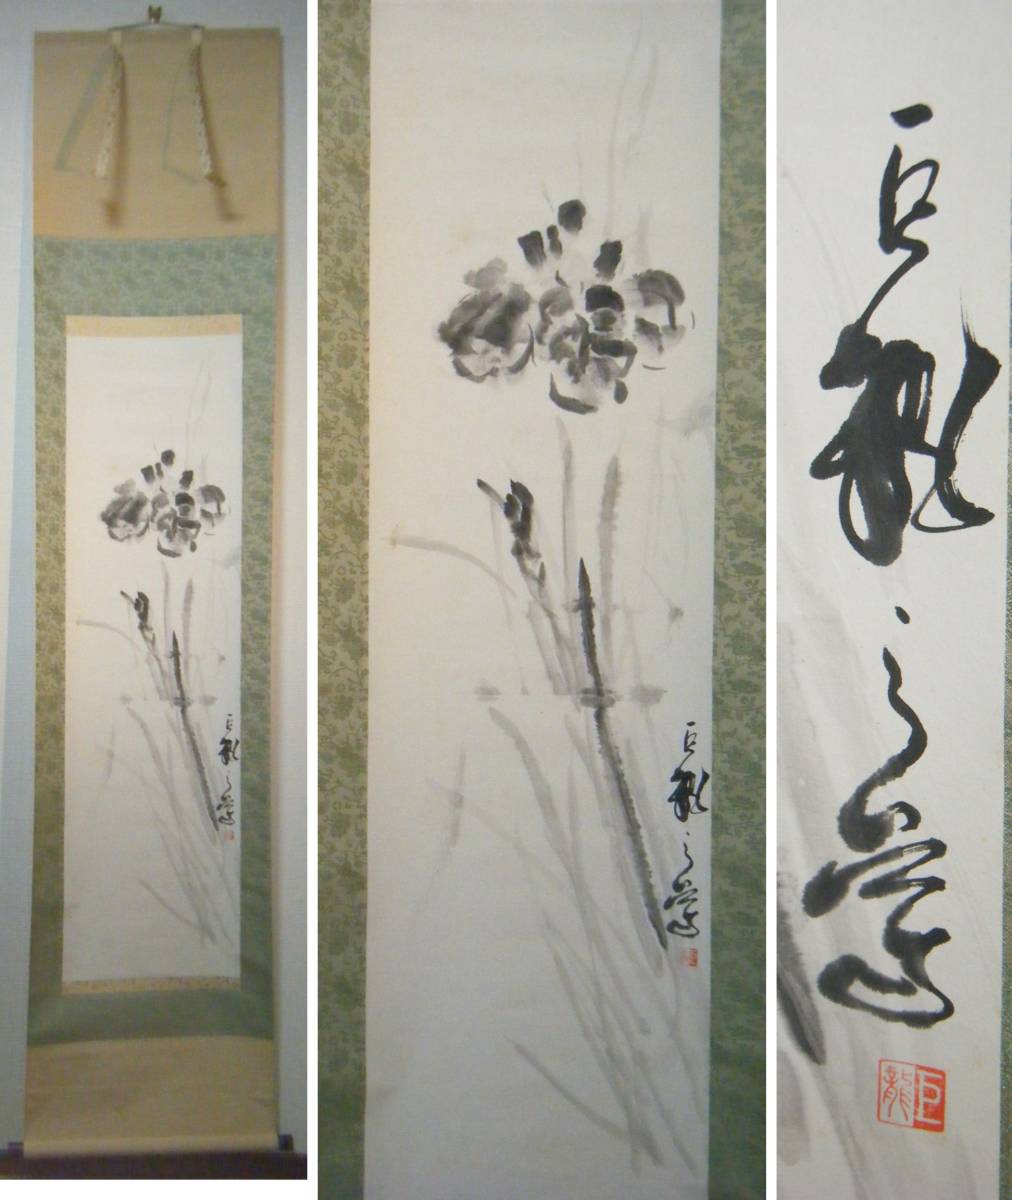 [Auténtico] Pergamino colgante con un dragón gigante y un motivo floral., excelente pieza L153, Cuadro, pintura japonesa, Flores y pájaros, Fauna silvestre